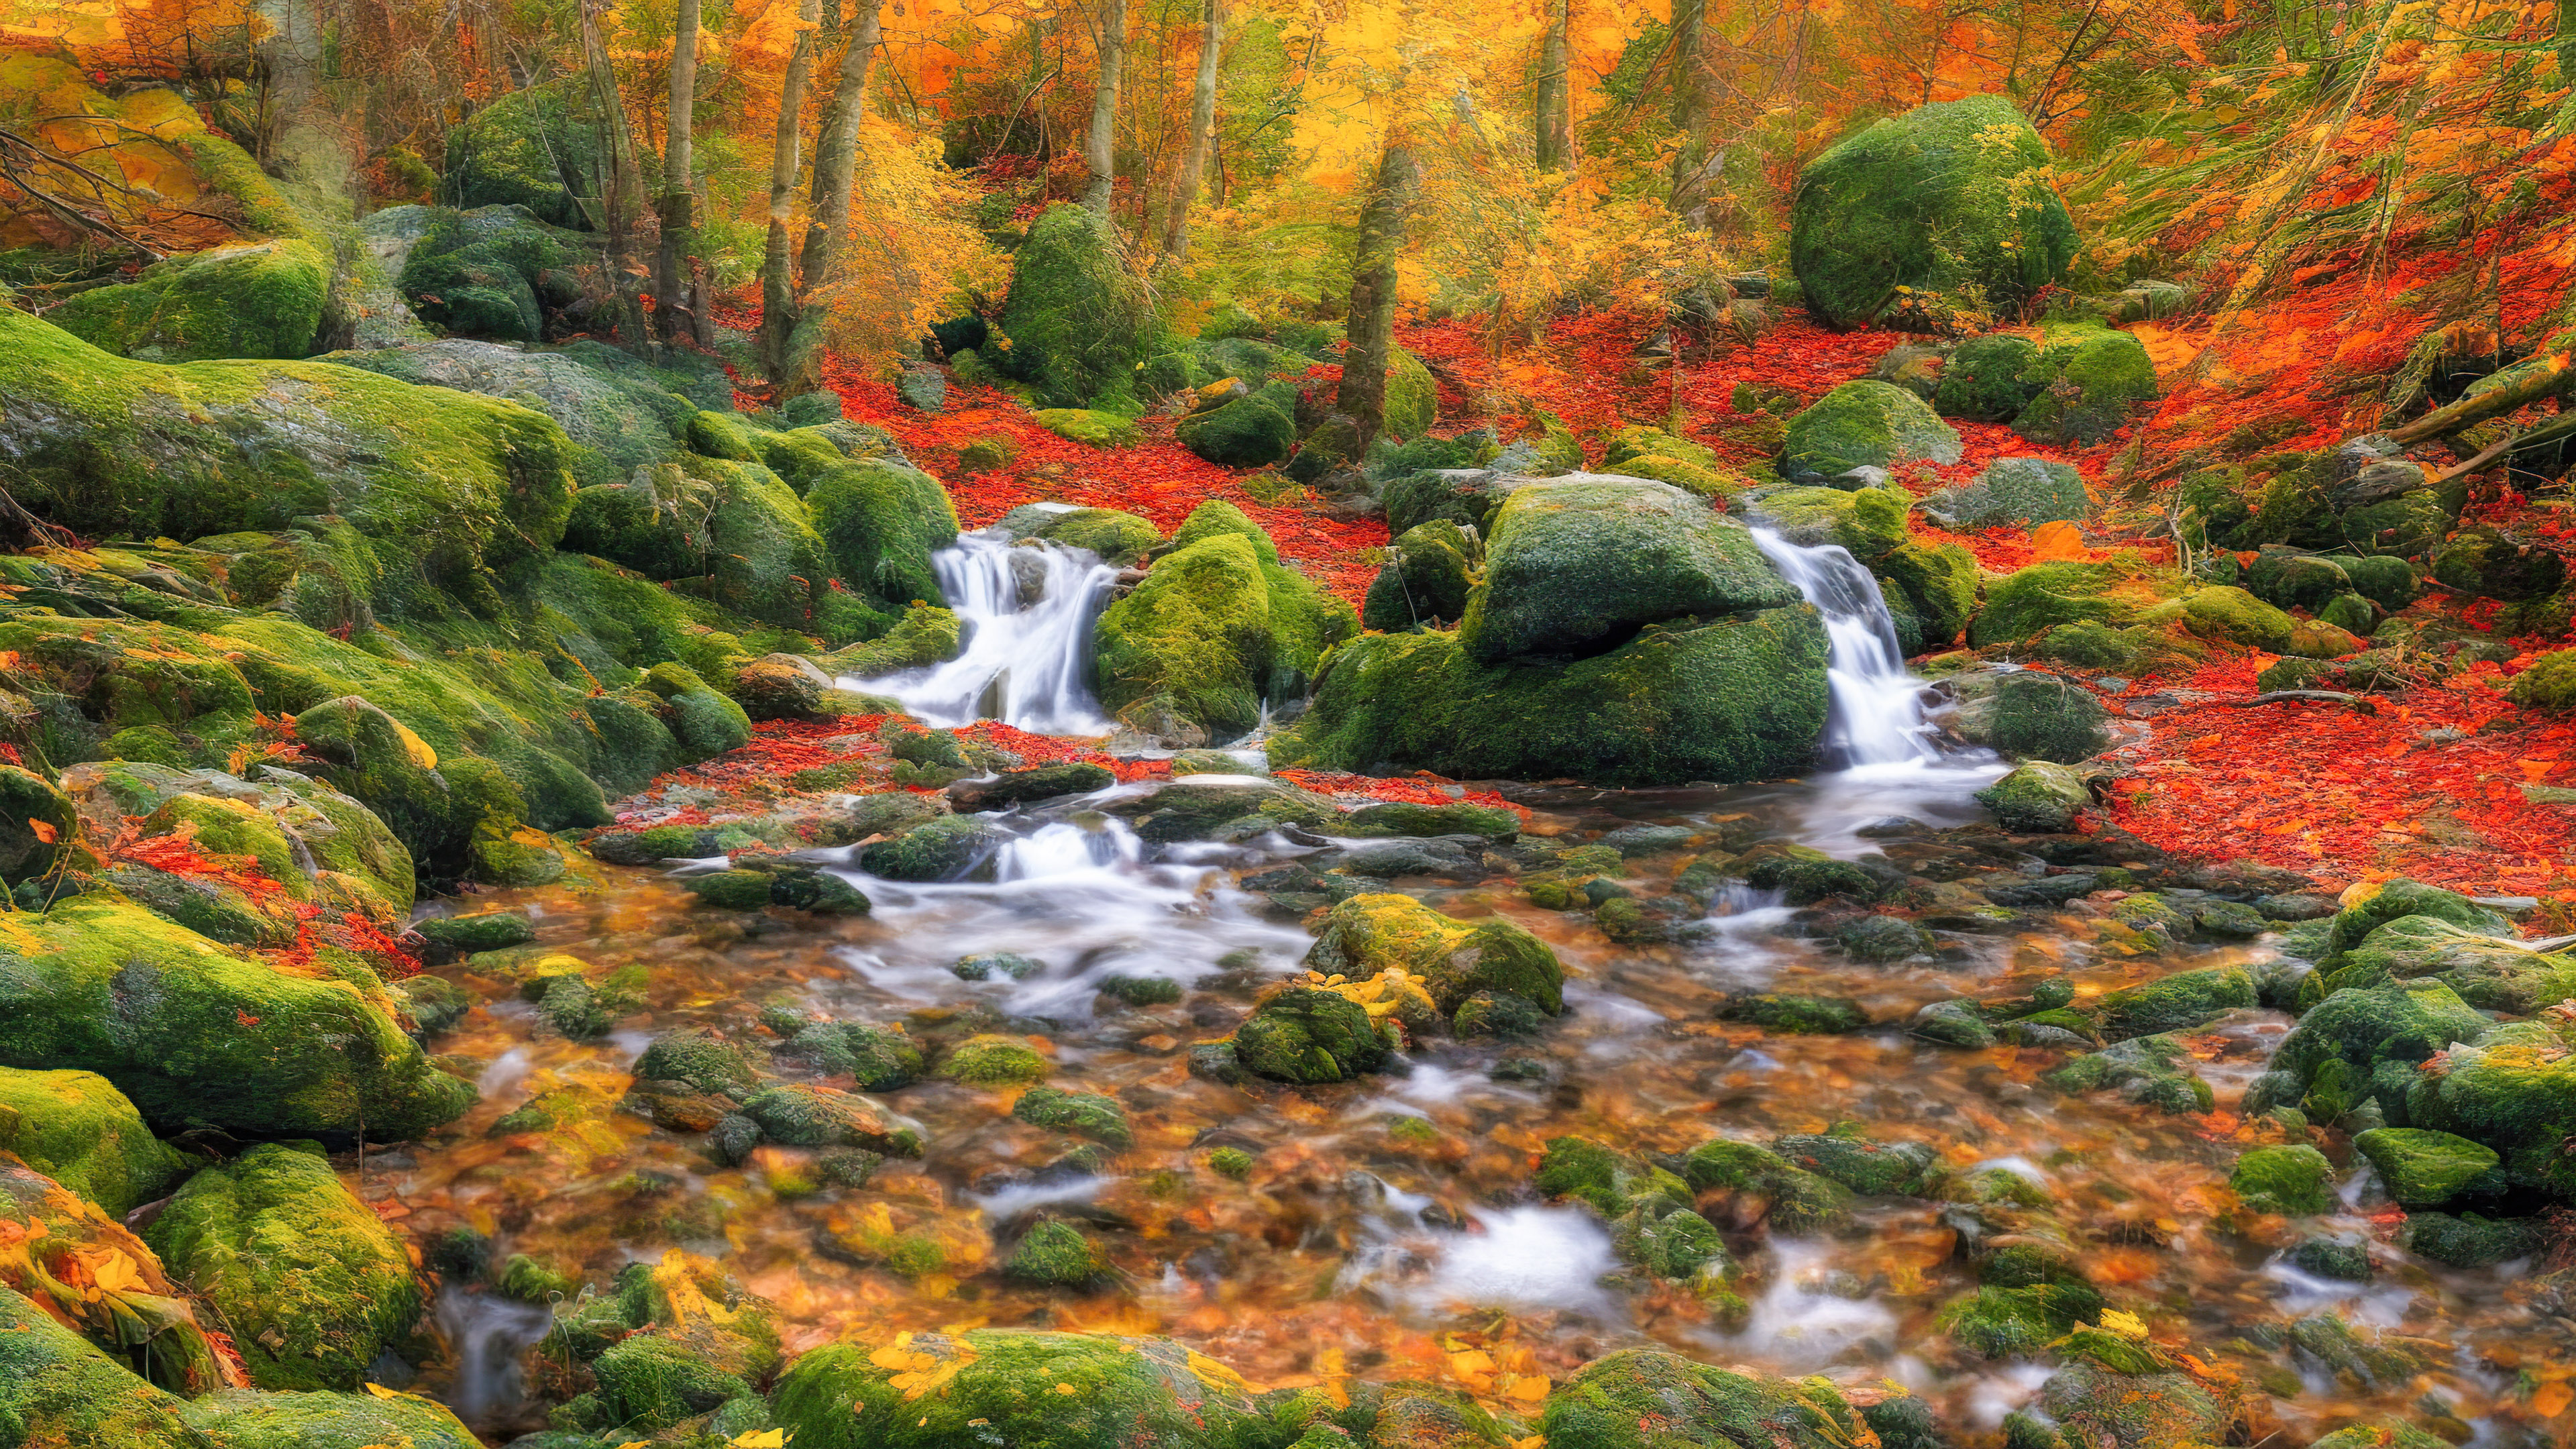 Vivez la tranquillité de notre fond d'écran PC de paysage, mettant en scène une scène de forêt tranquille avec un ruisseau sinueux, entouré d'un feuillage d'automne vibrant.